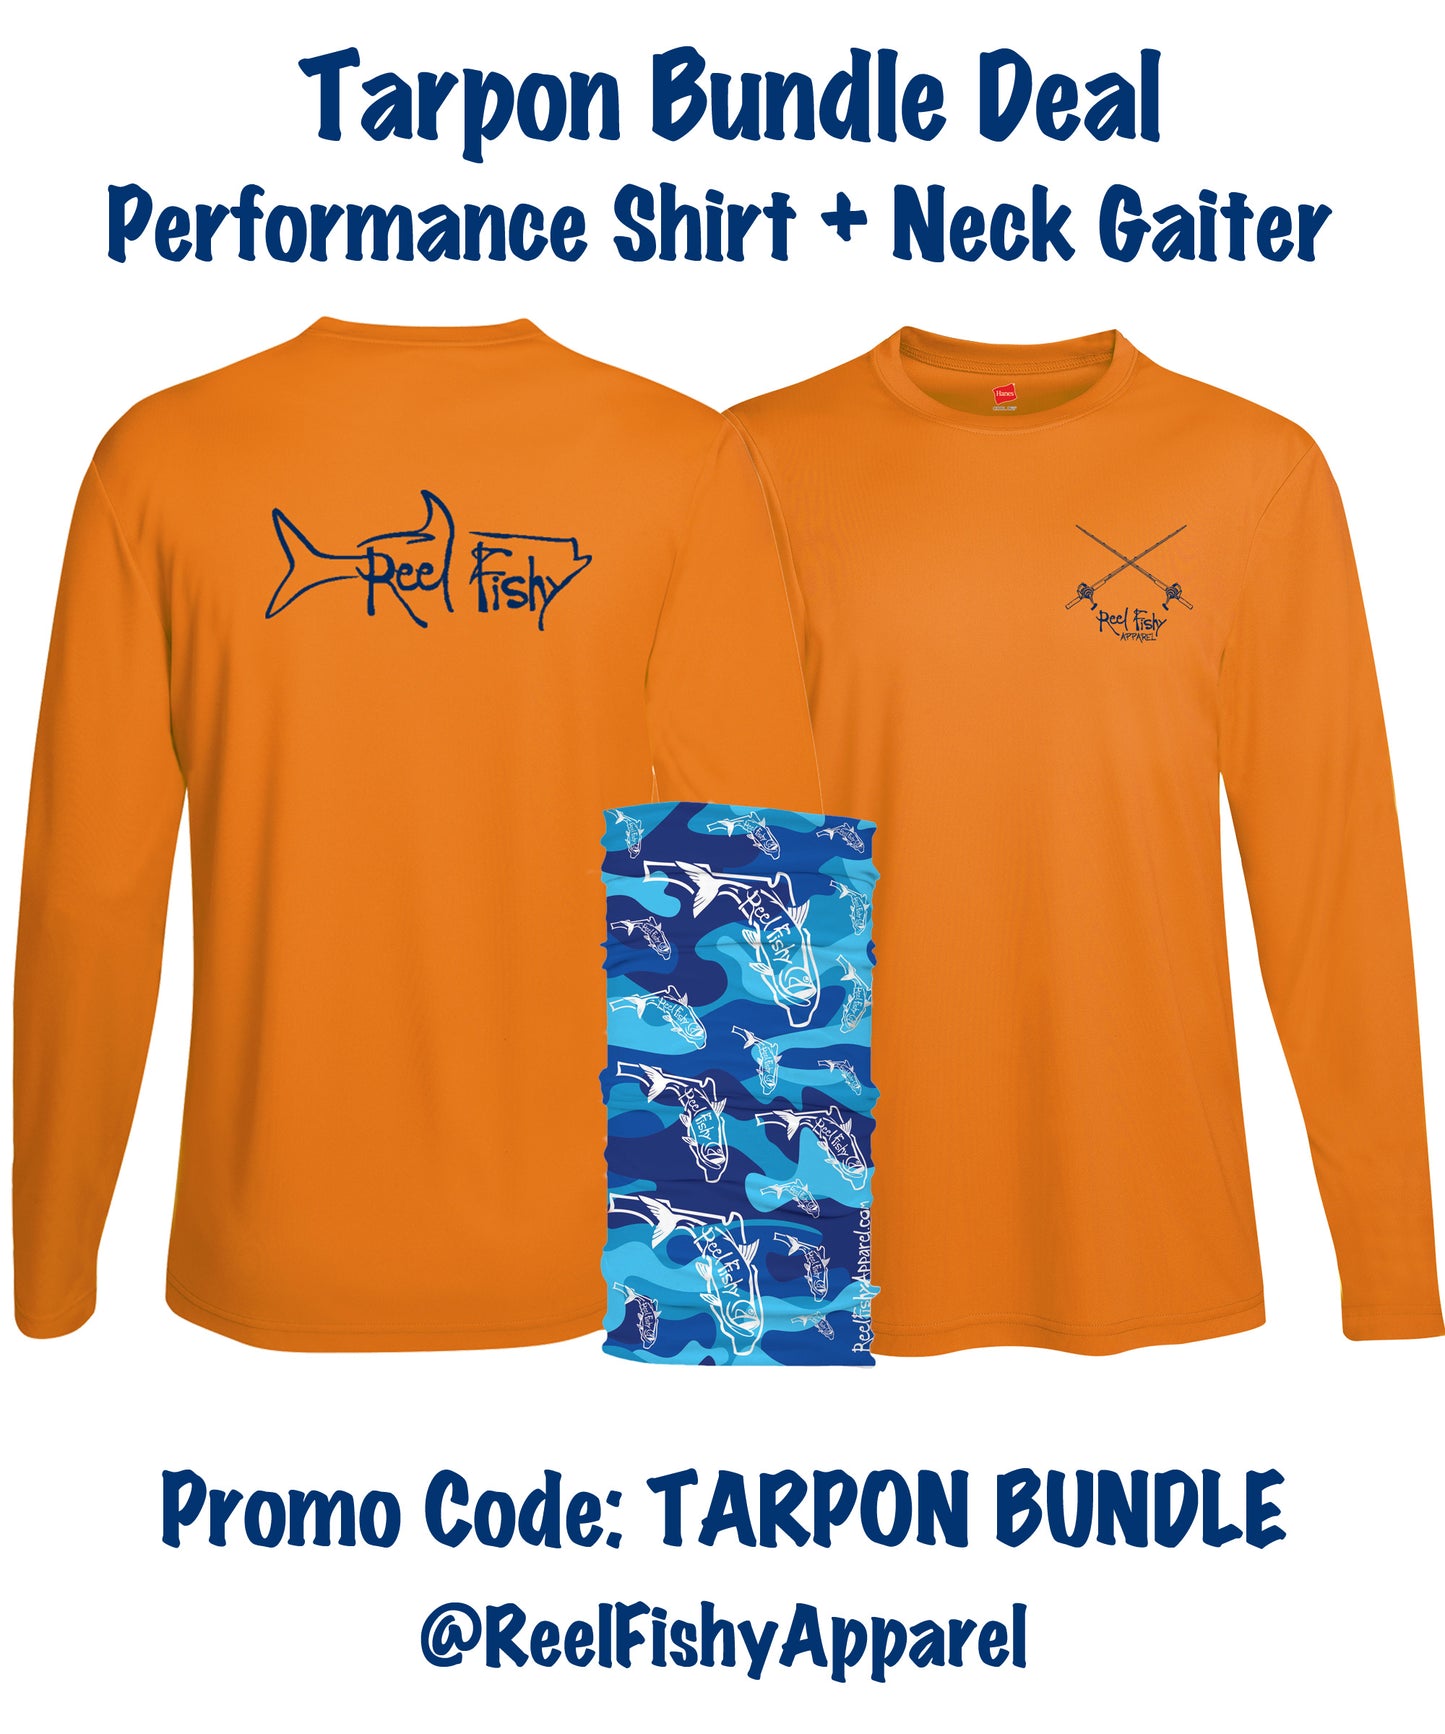 Taron Bundle Deal!  Performance shirt + neck gaiter